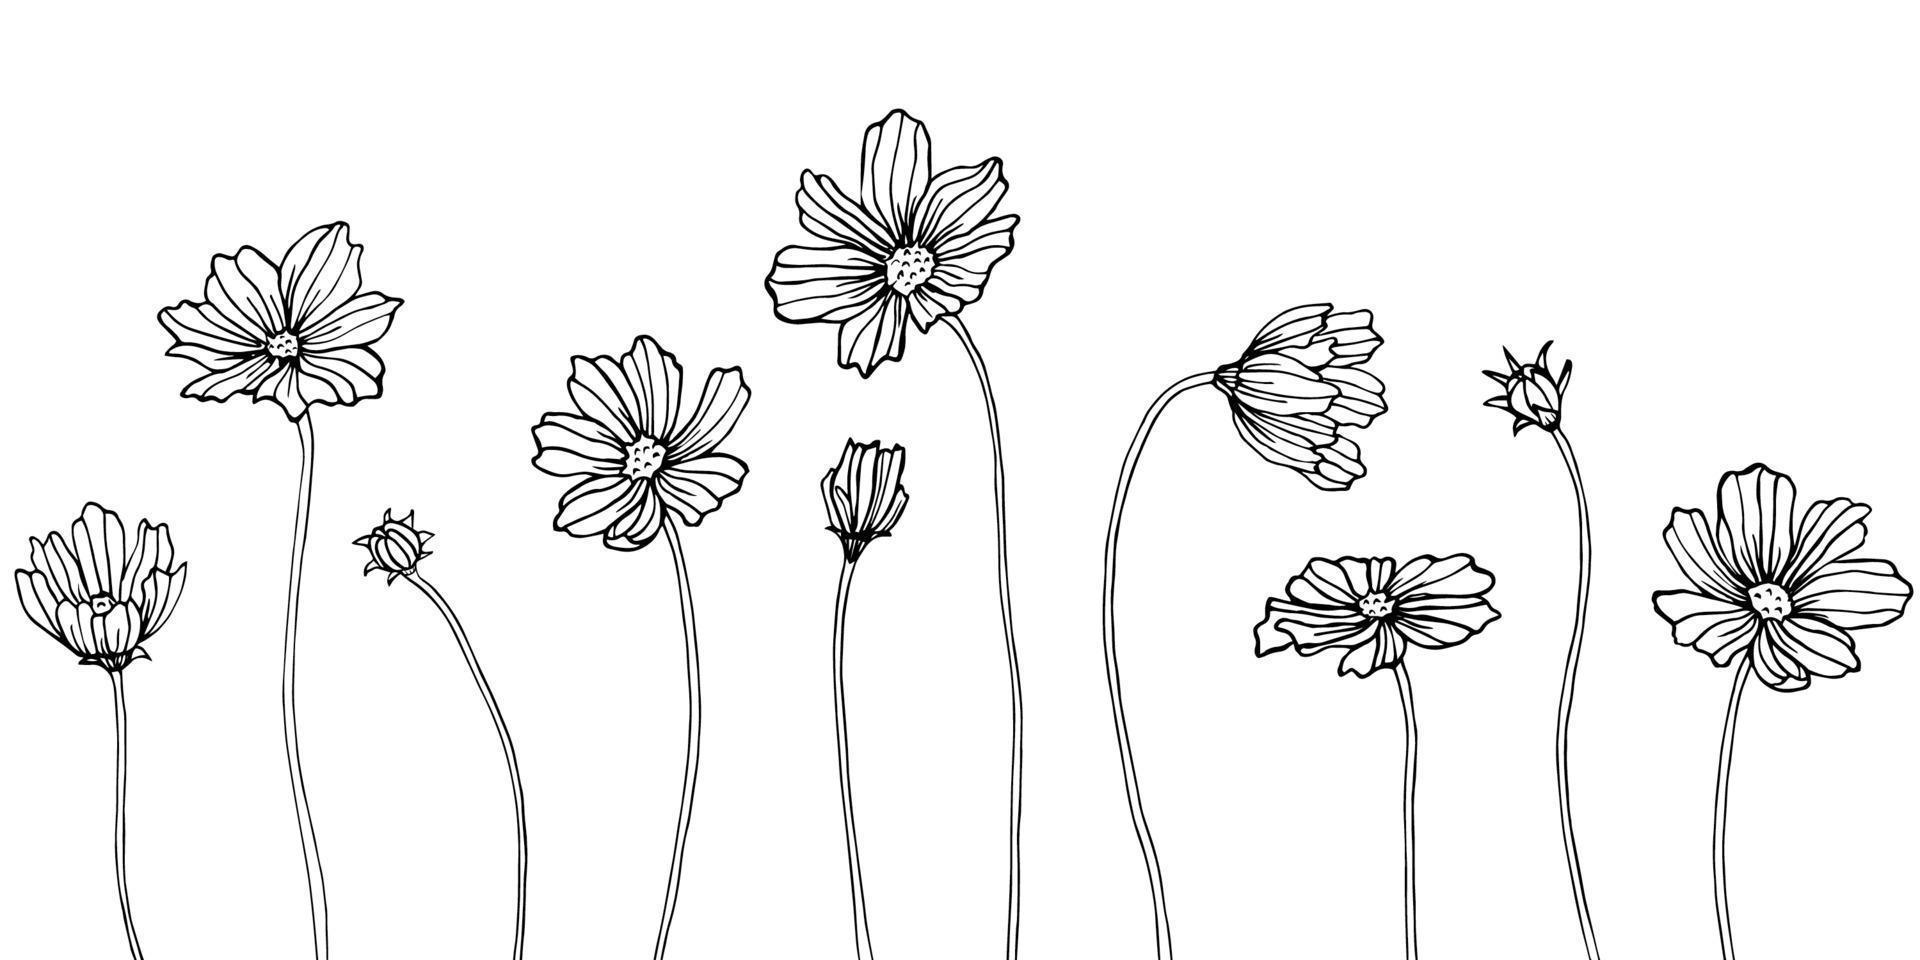 élément d'illustration cosmea isolé. fleurs sauvages de printemps isolés. art d'encre gravé noir et blanc. vecteur